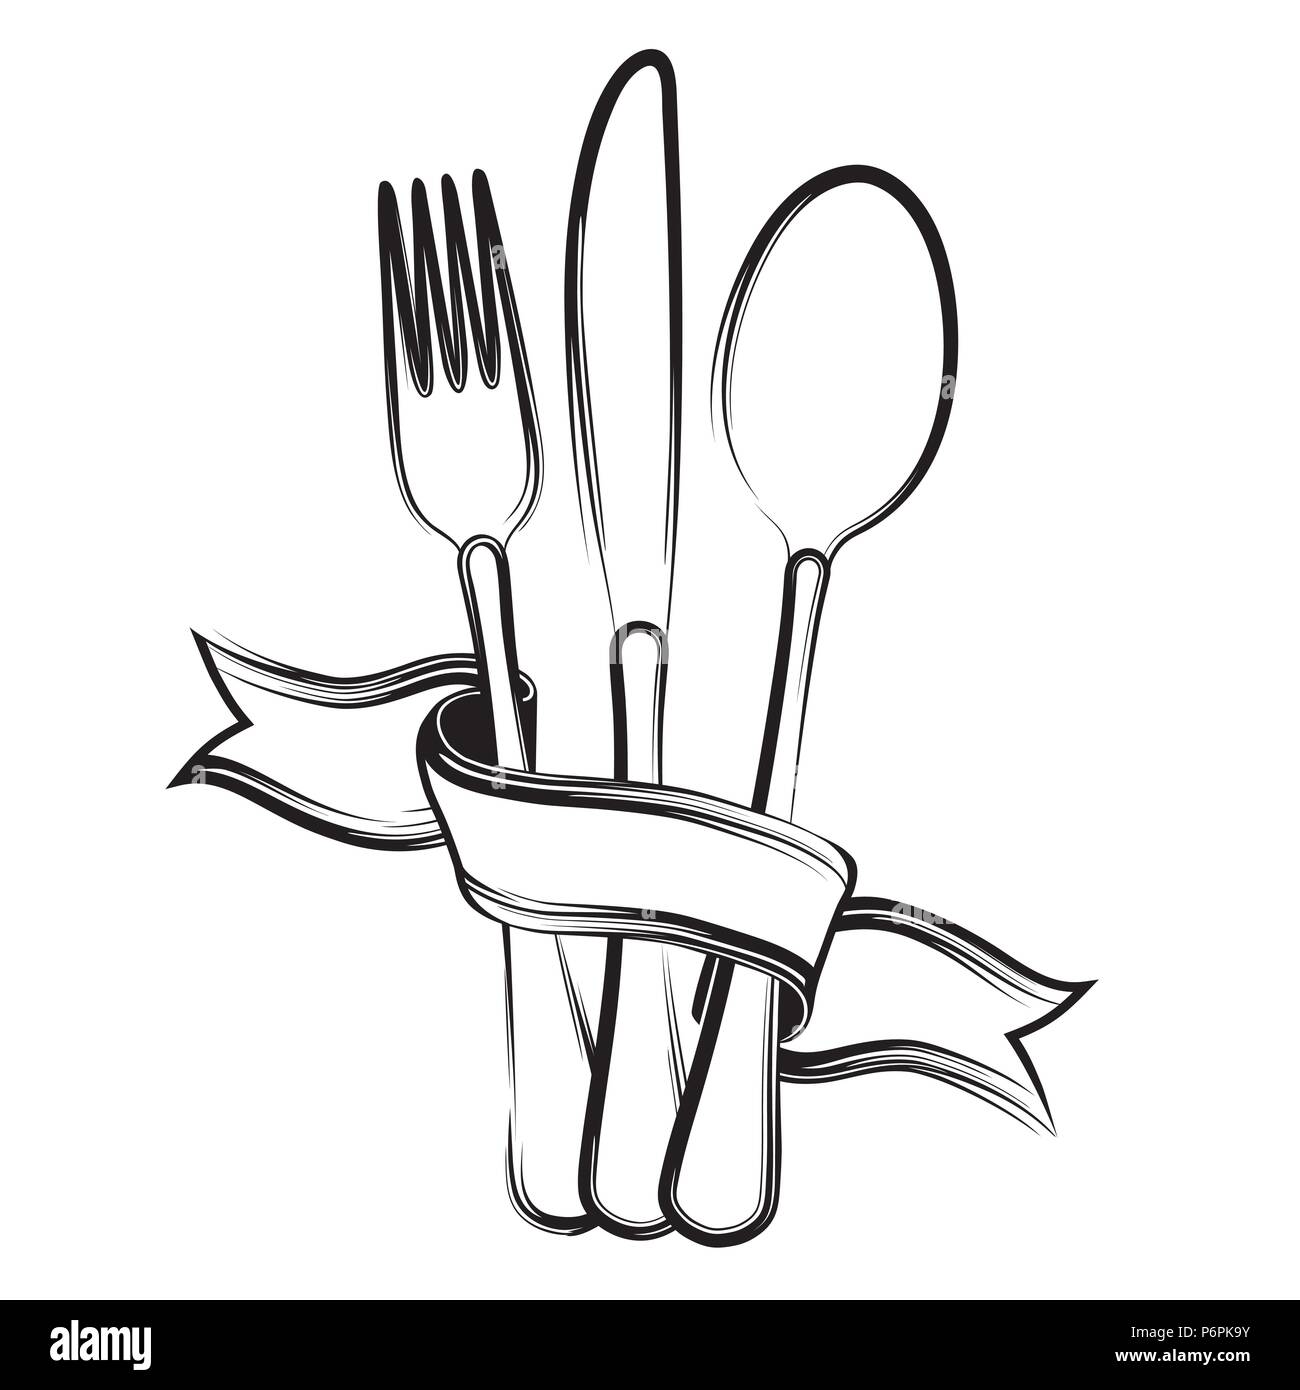 Ruban, cuillère, fourchette et couteau sur un fond blanc.Le noir et blanc  Image Vectorielle Stock - Alamy